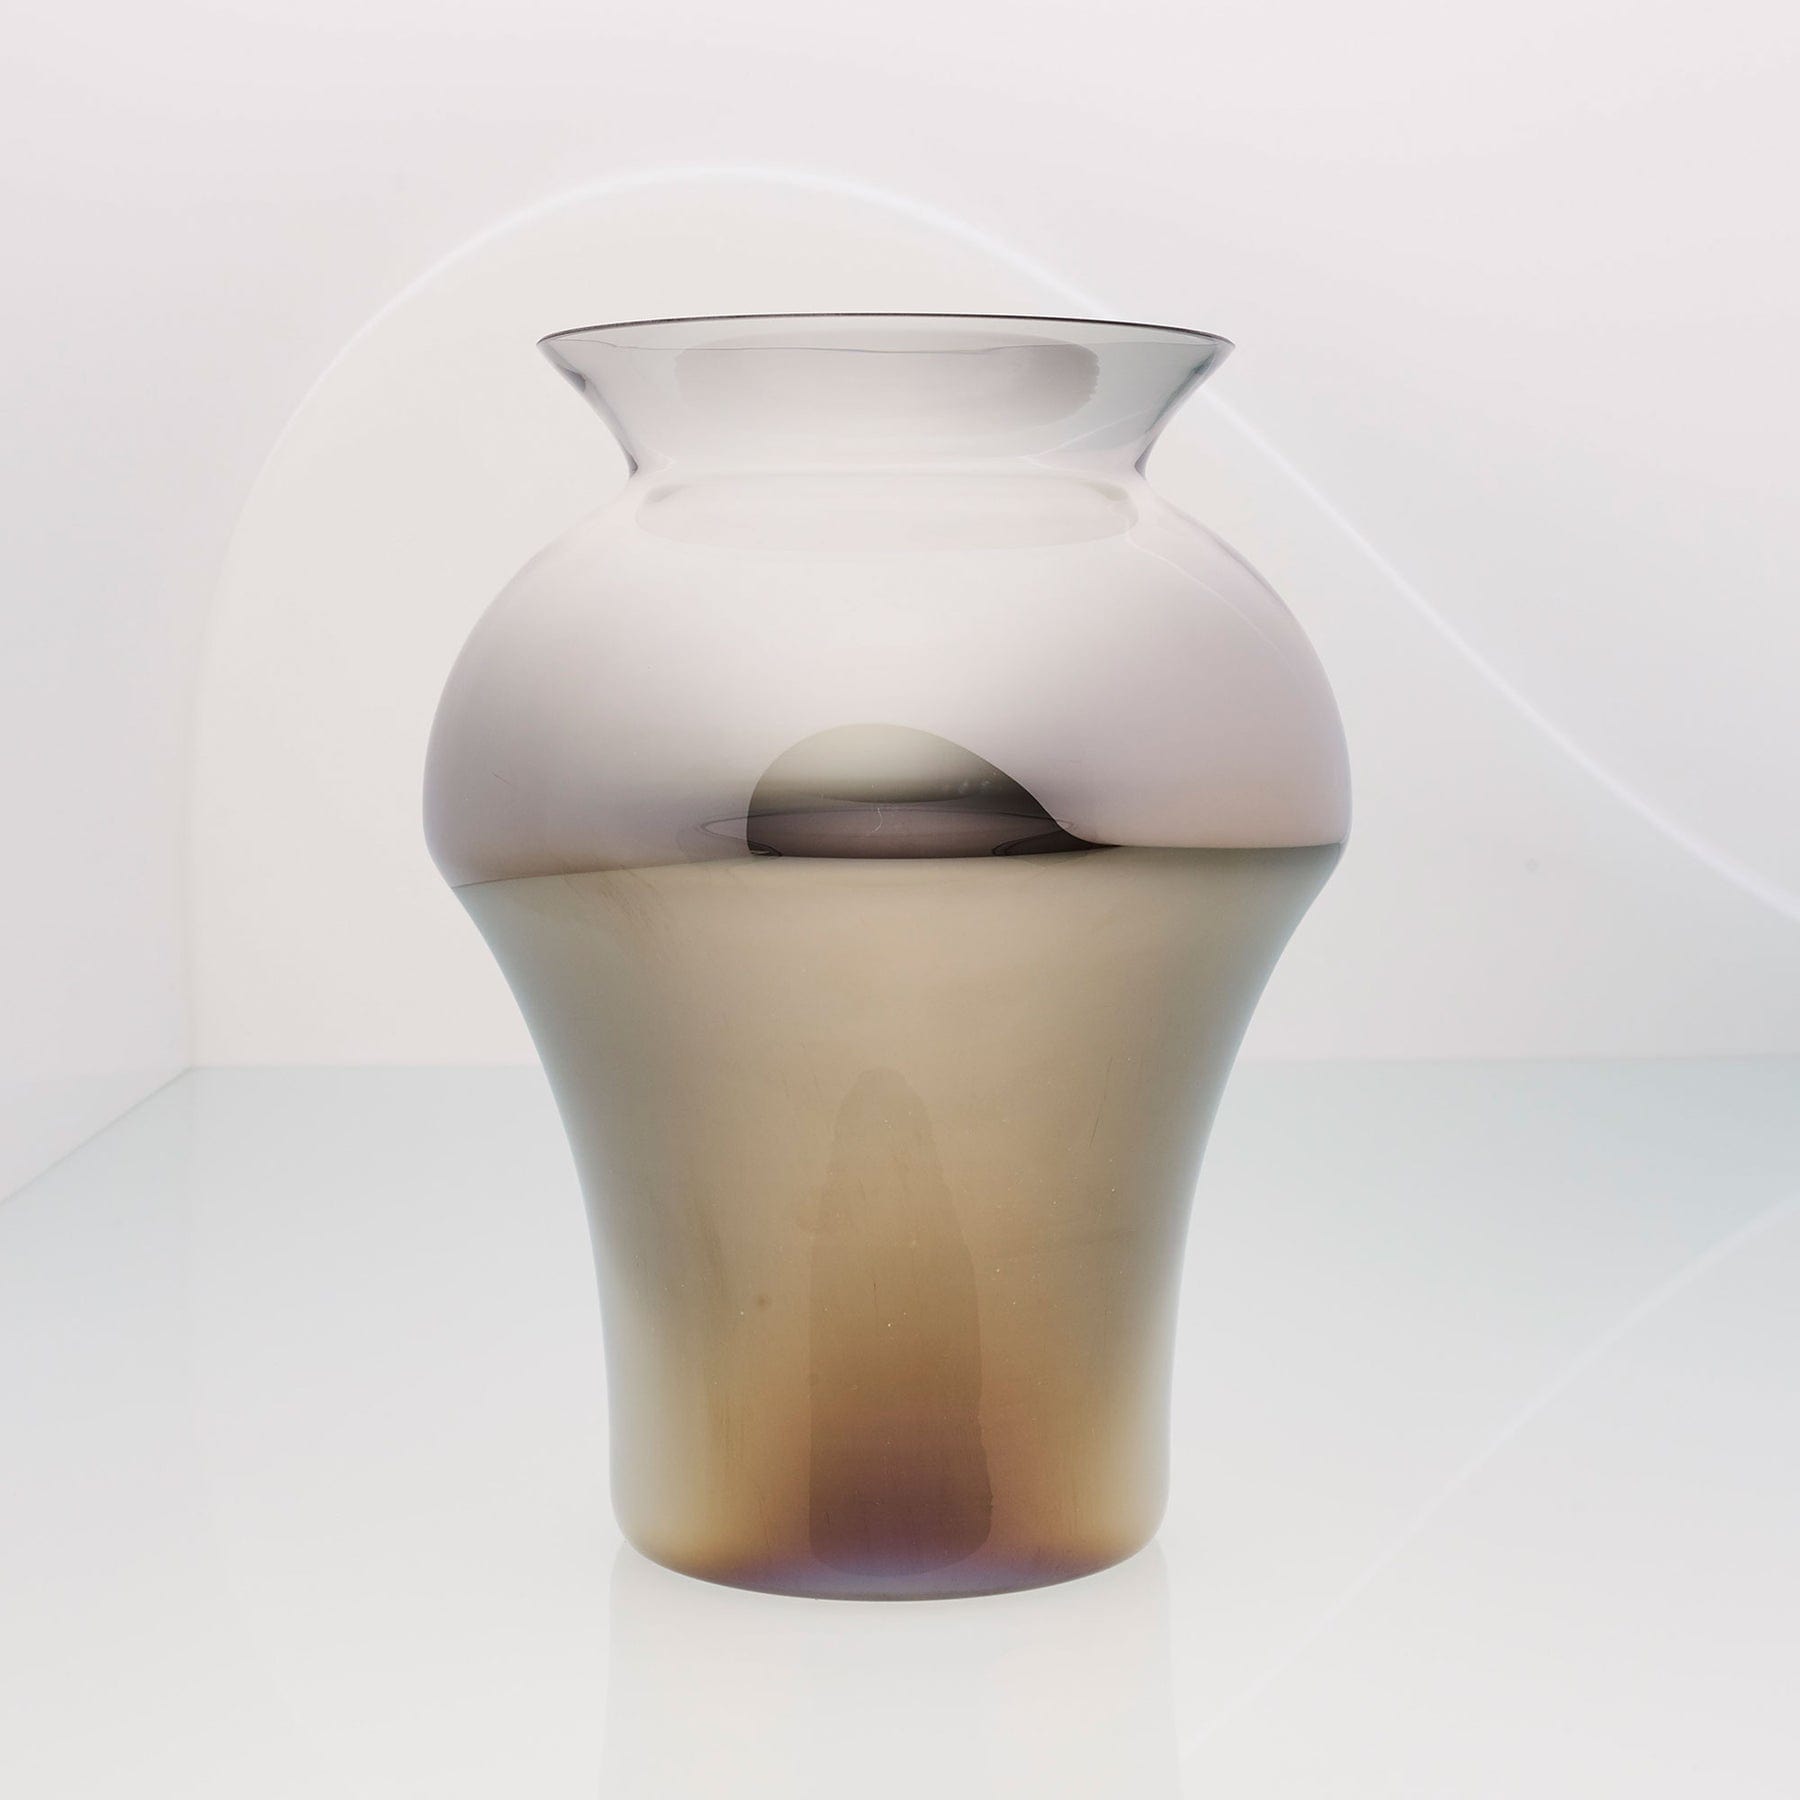 An & Angel, Trophy Vase, Titanium Exterior / Transparent Interior